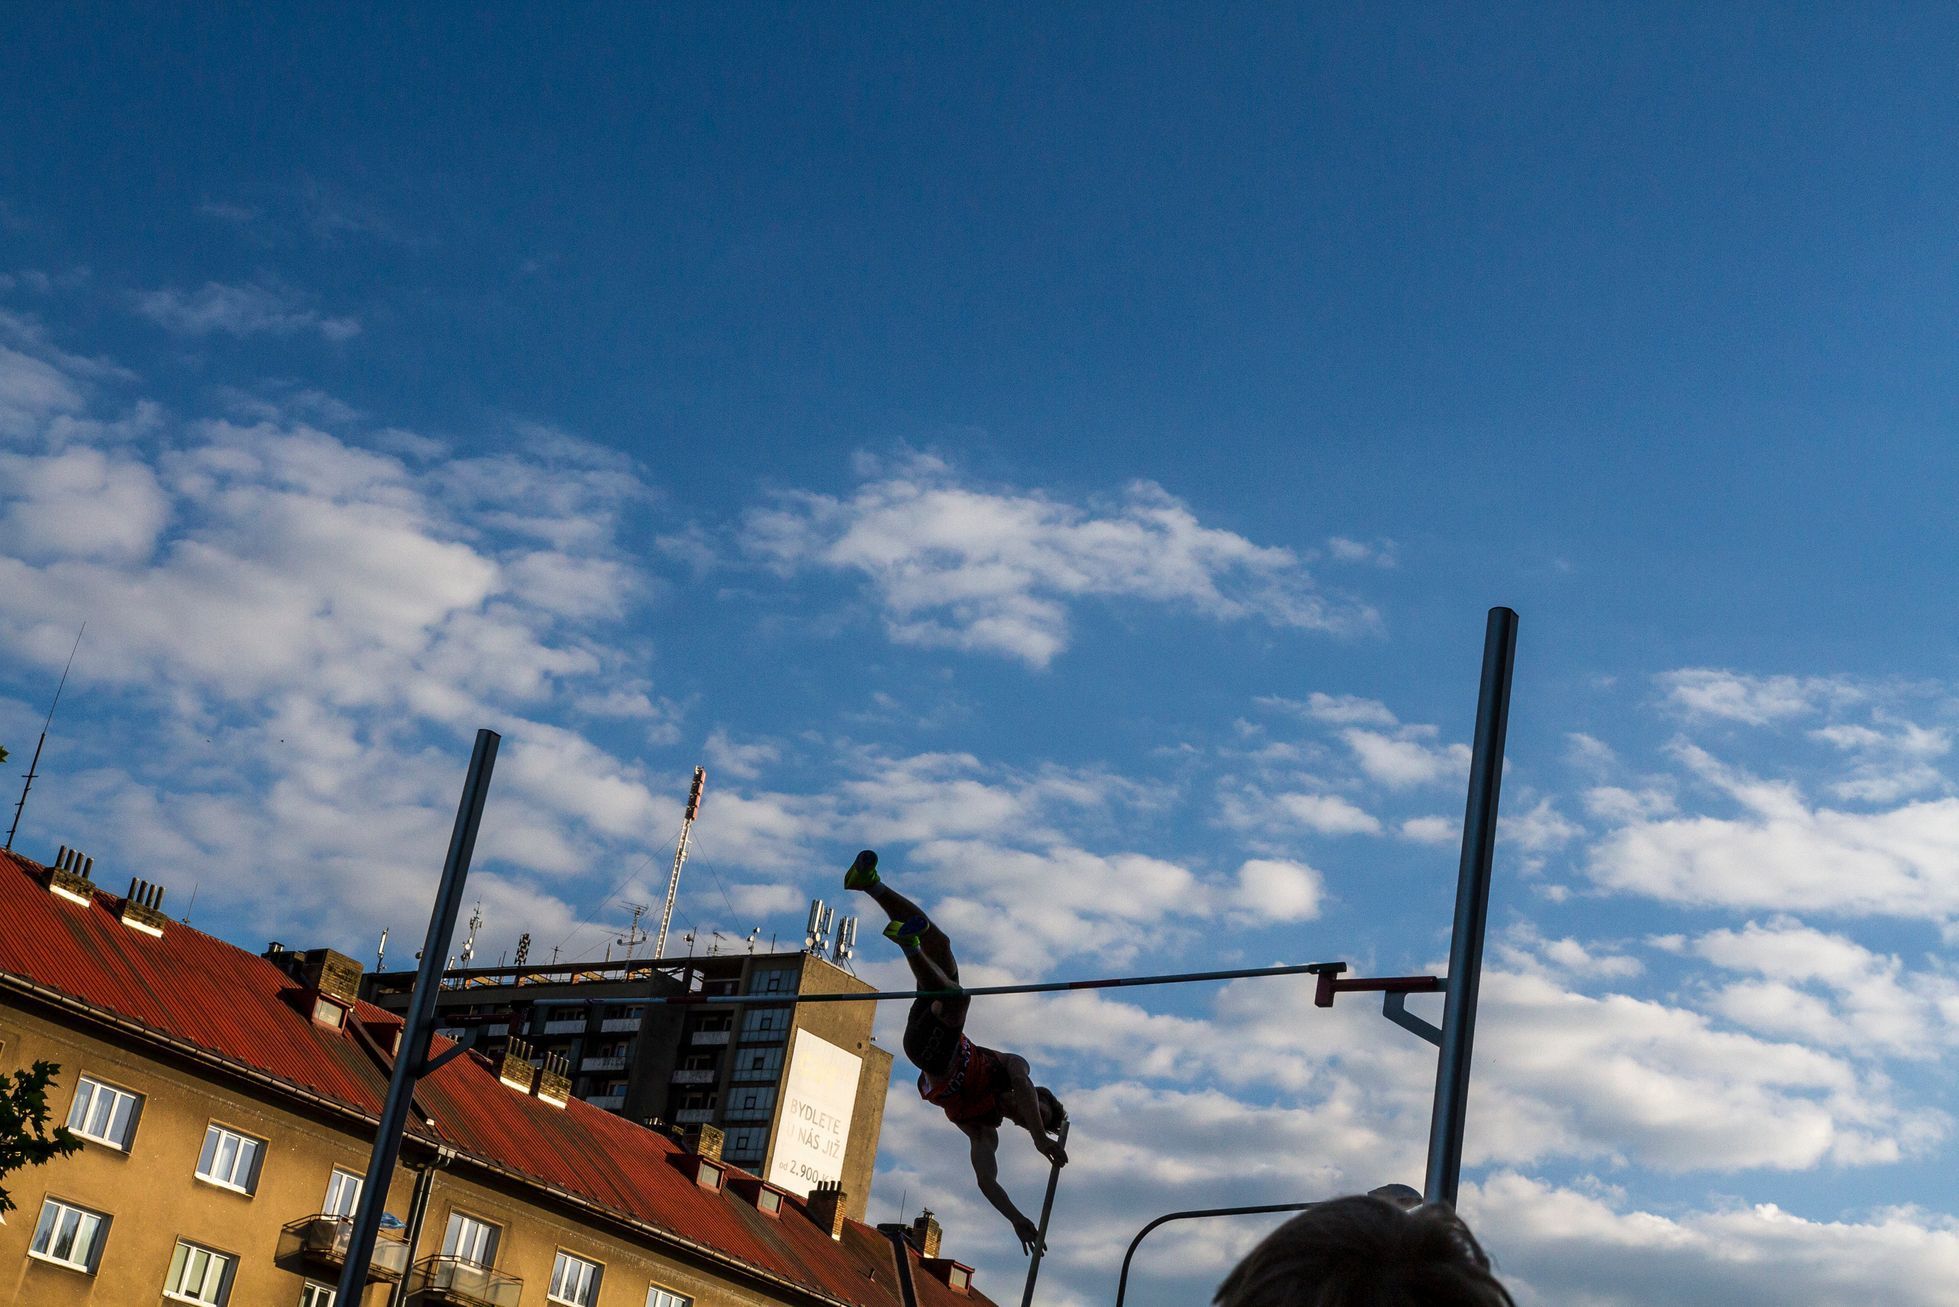 MČR v atletice 2017: Skok o tyči mužů na náměstí